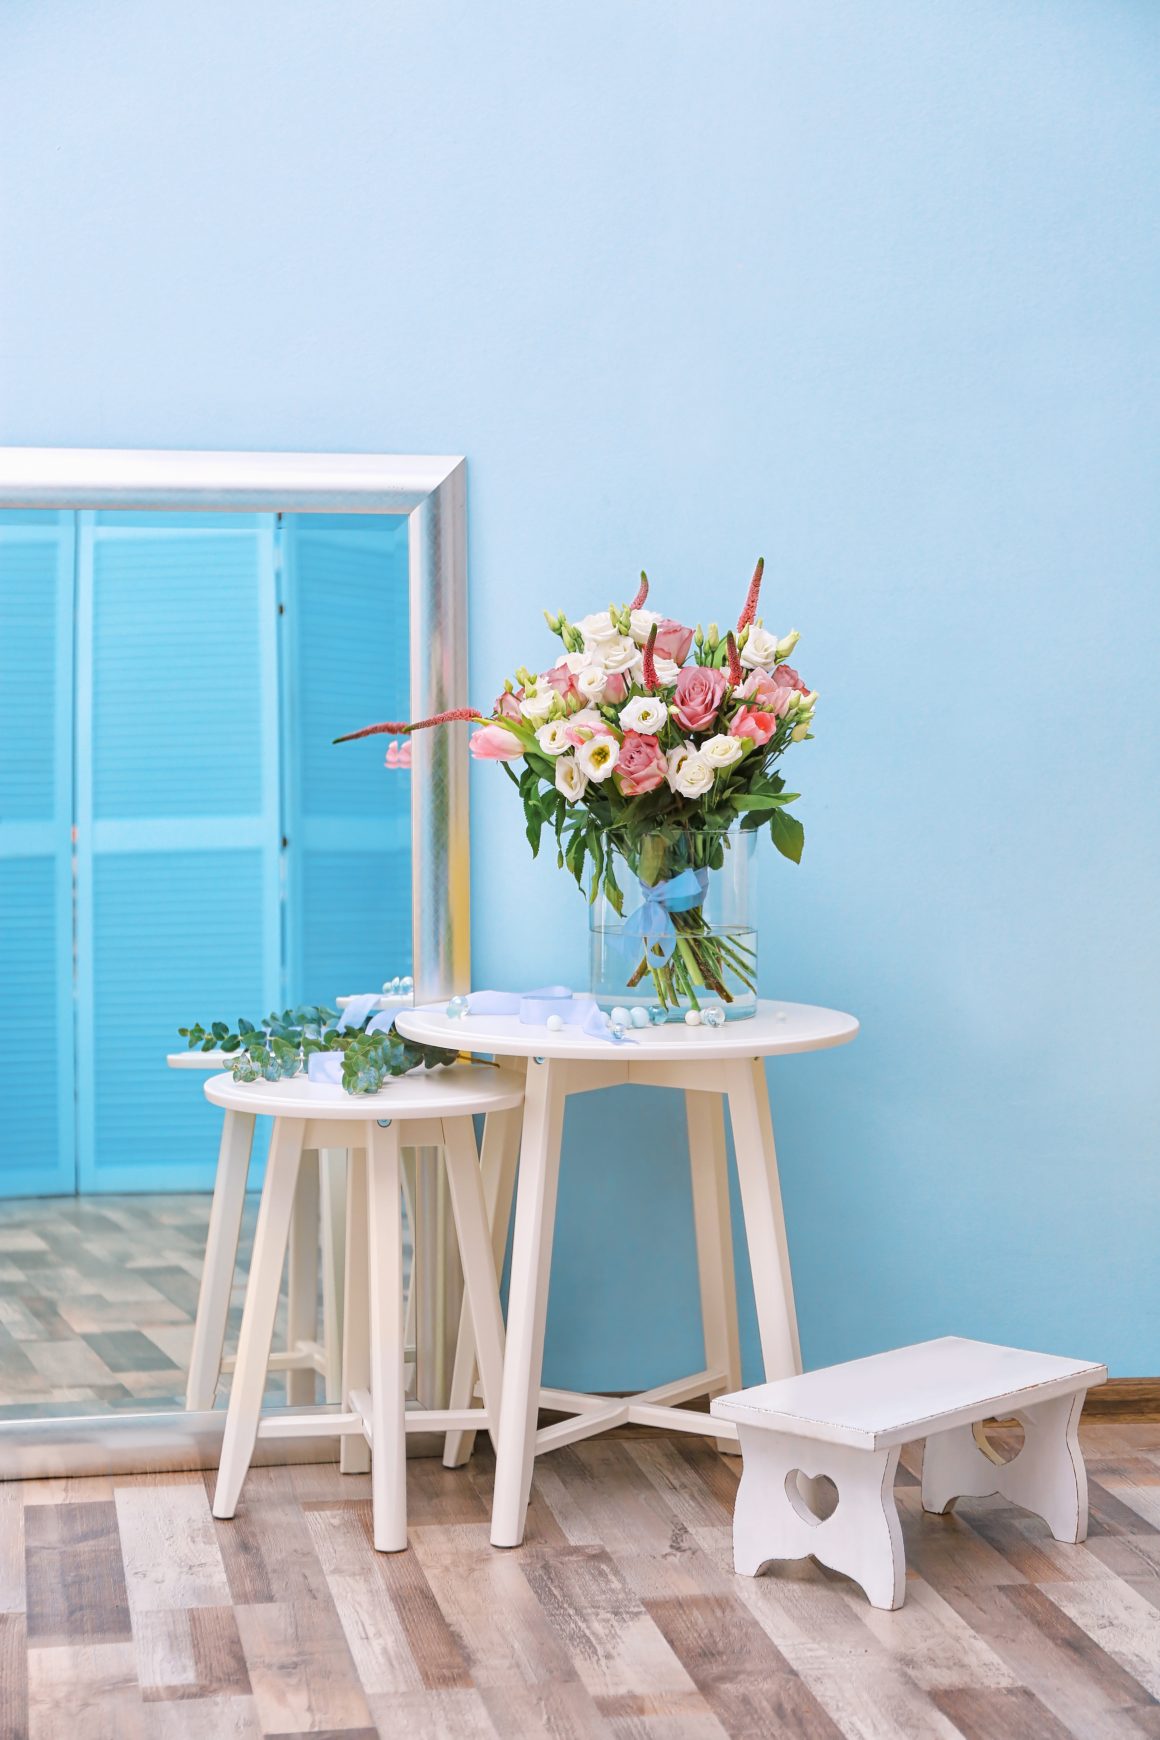 Un mur de véranda peint en bleu clair, avec une table blanche, un bouquet de fleurs colorées et un miroir